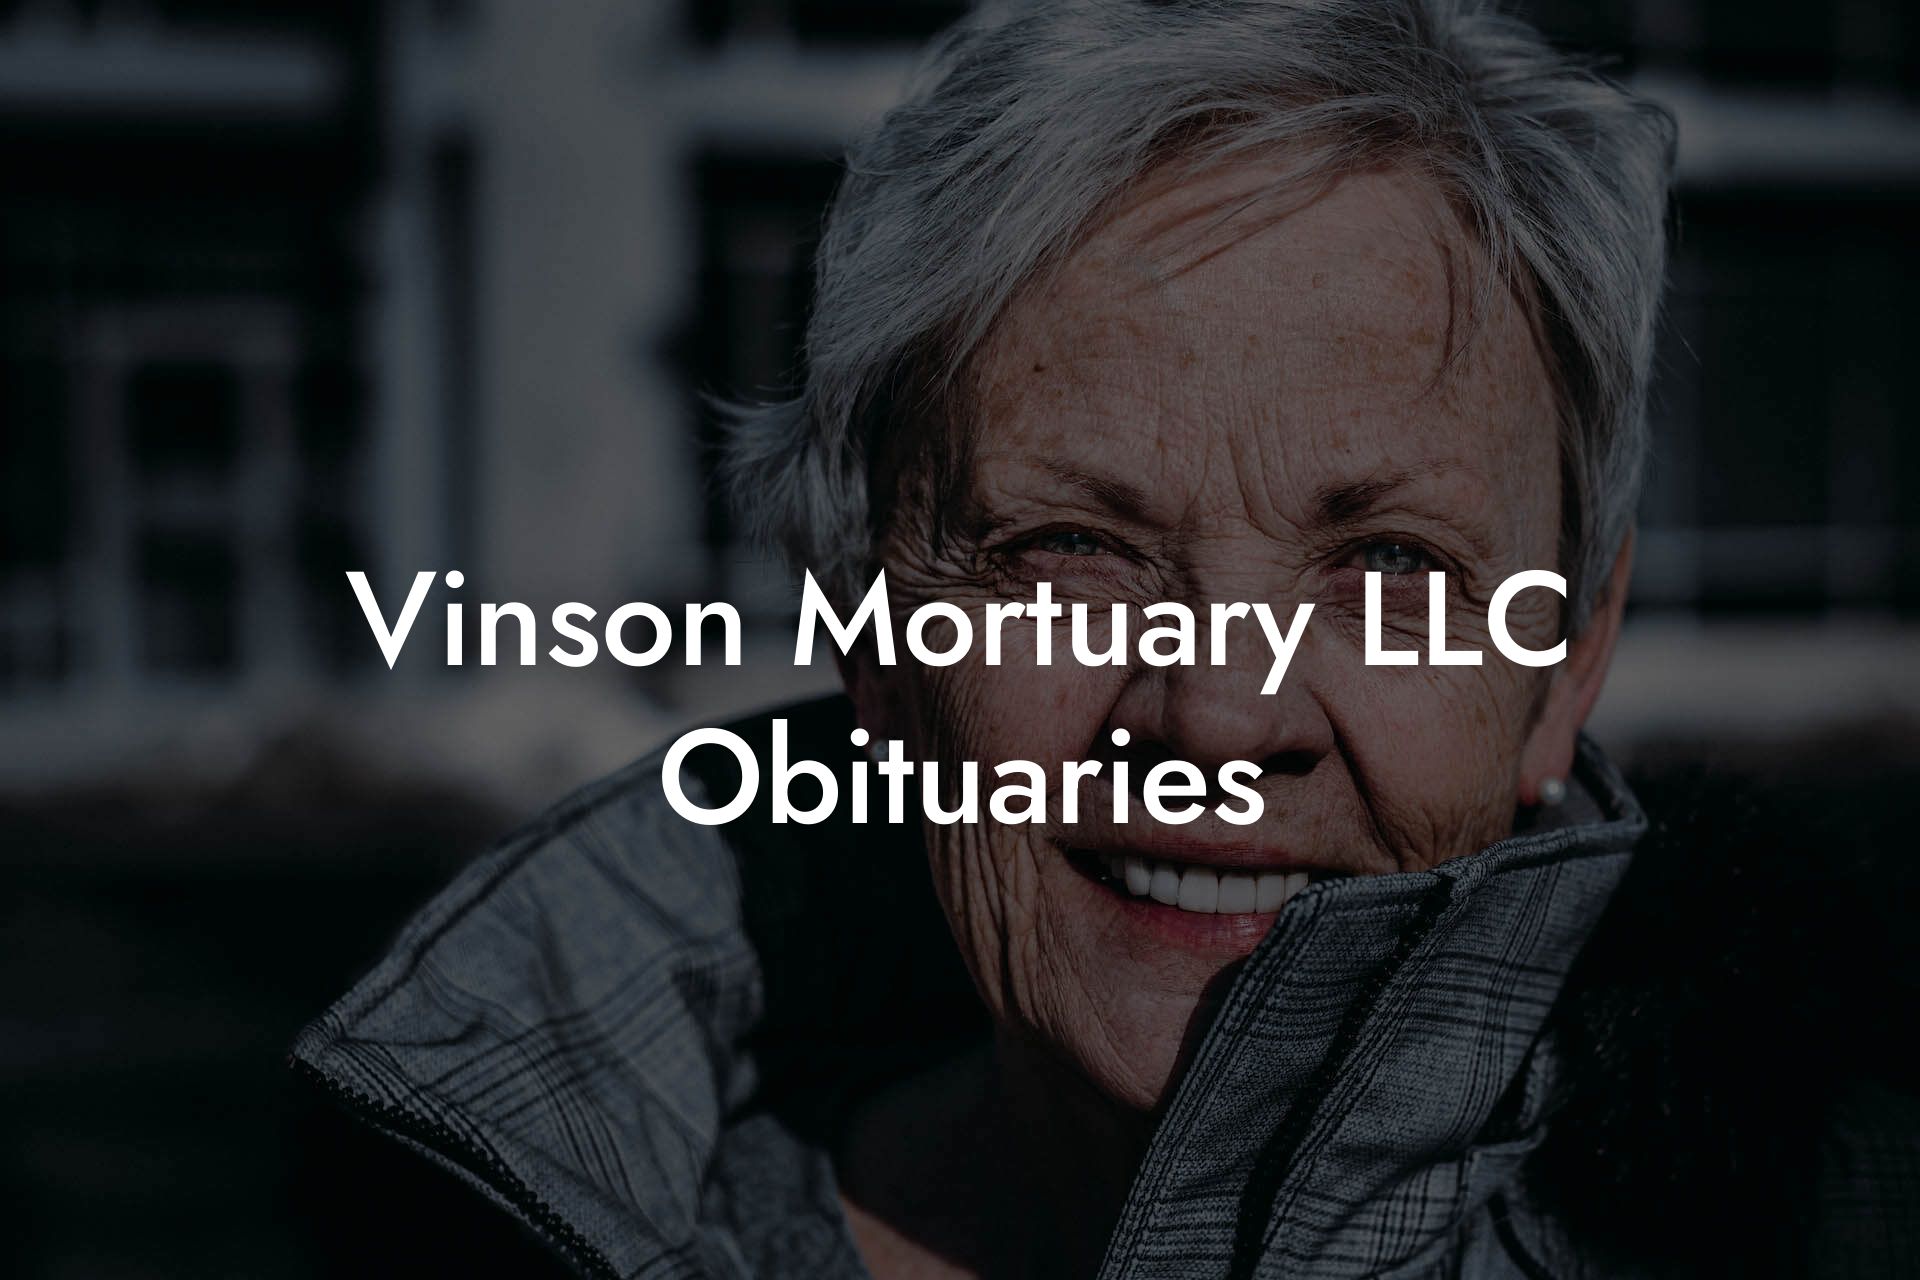 Vinson Mortuary LLC Obituaries